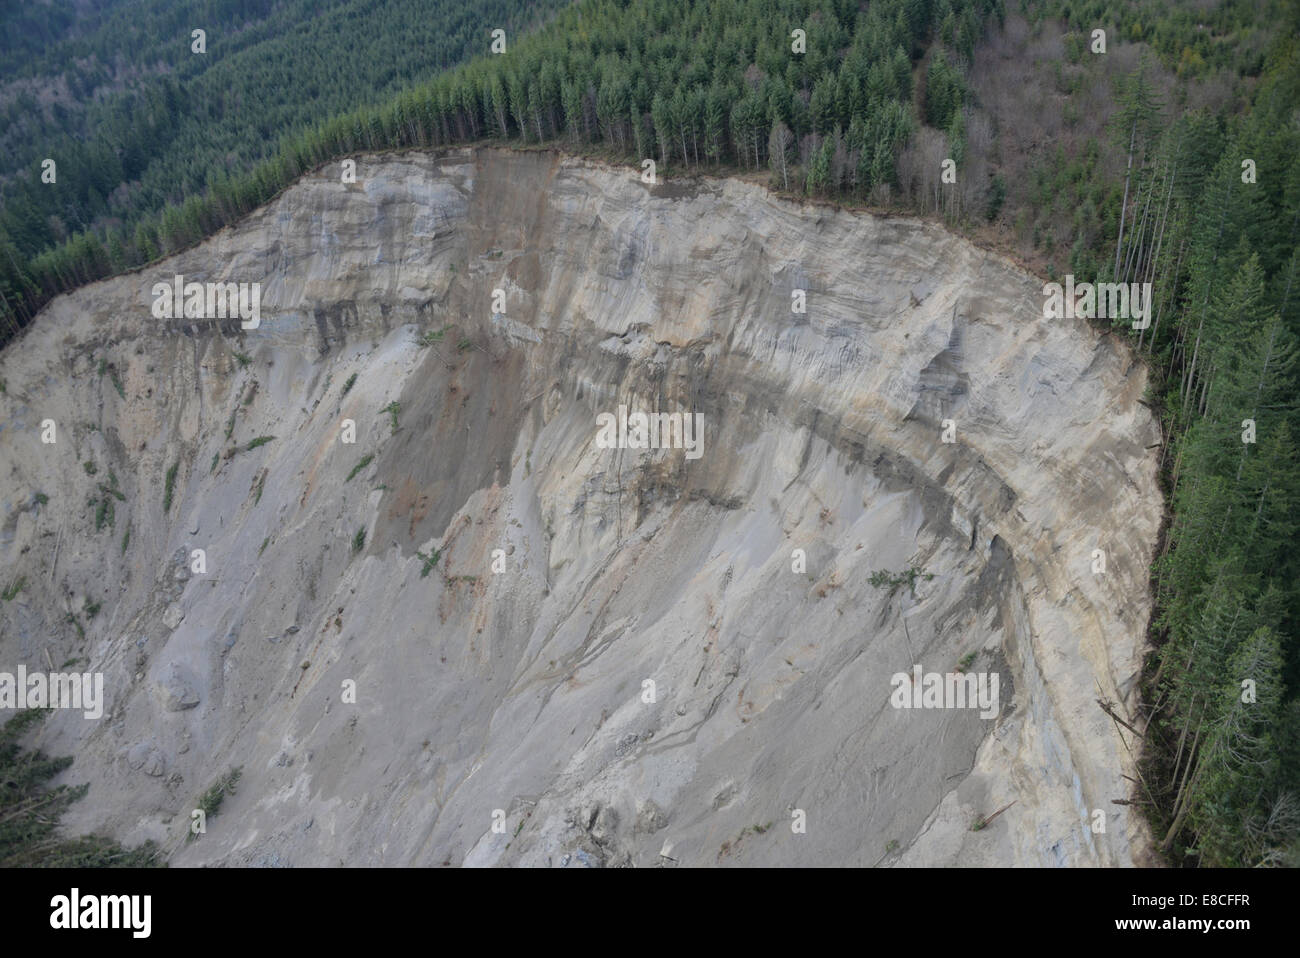 001 2014 Landslide in Washington State Stock Photo